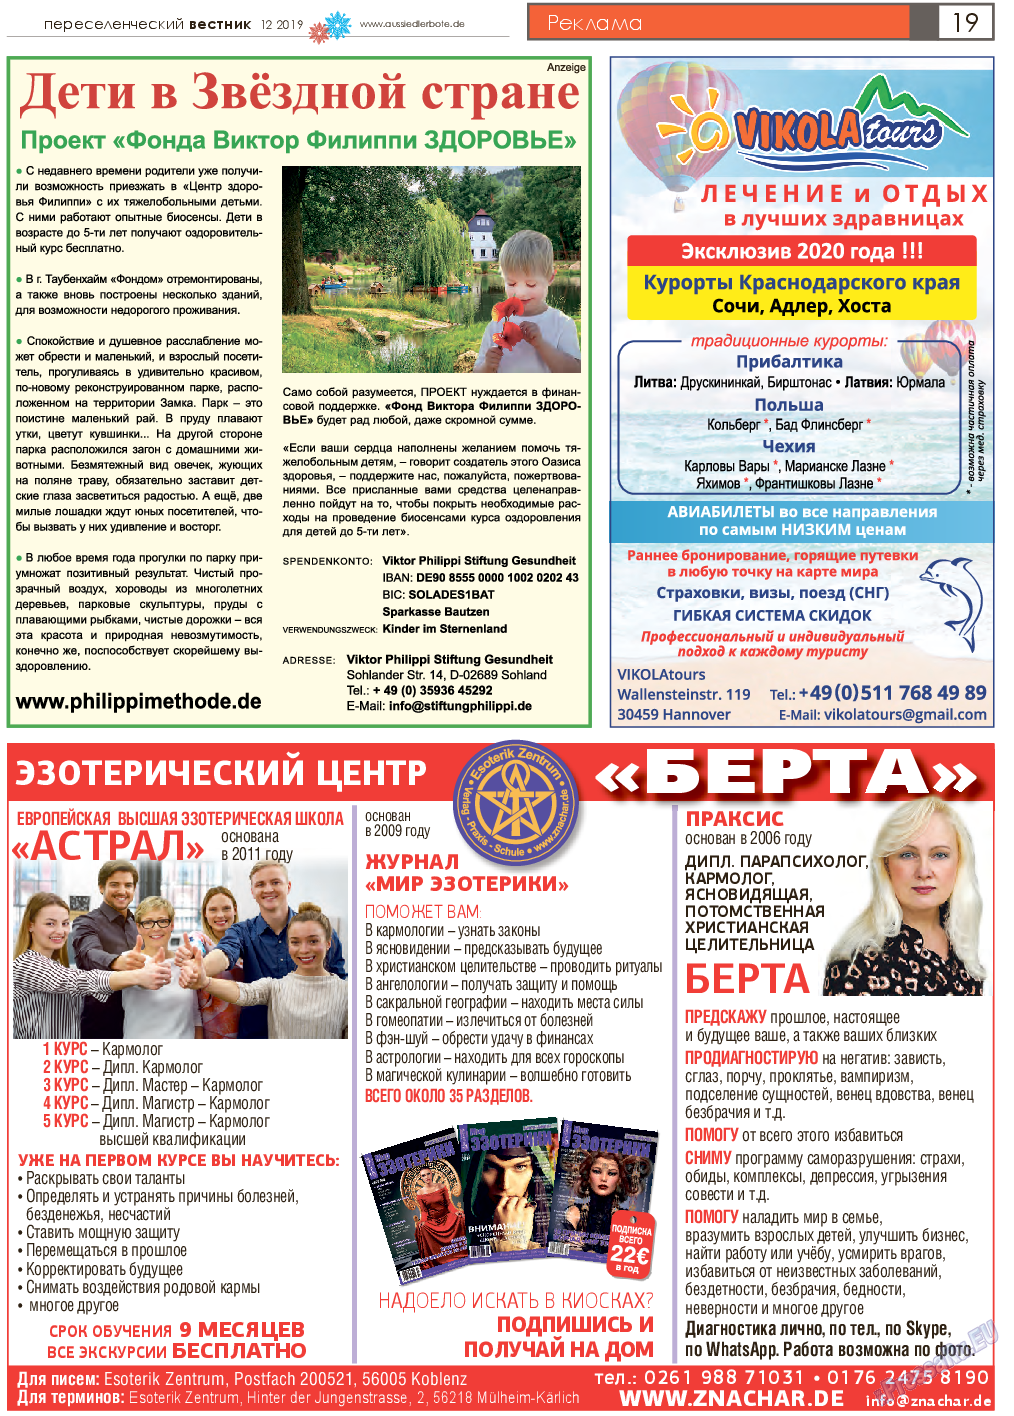 Переселенческий вестник, газета. 2019 №12 стр.19